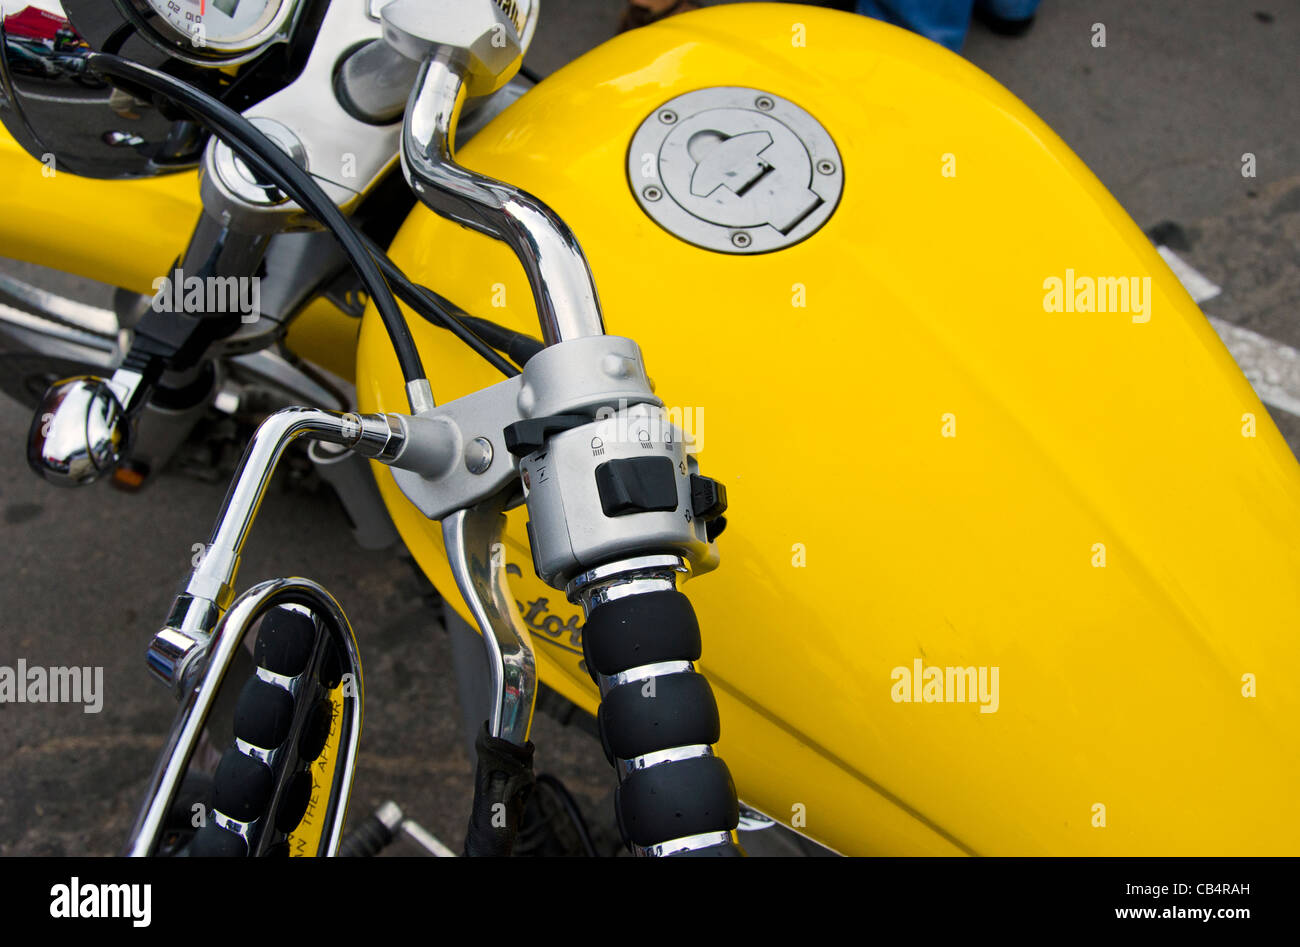 Motorrad-Rad und gelbe Benzin-Tank-Details. Risiko für Gesundheit Fahrzeug. Stockfoto